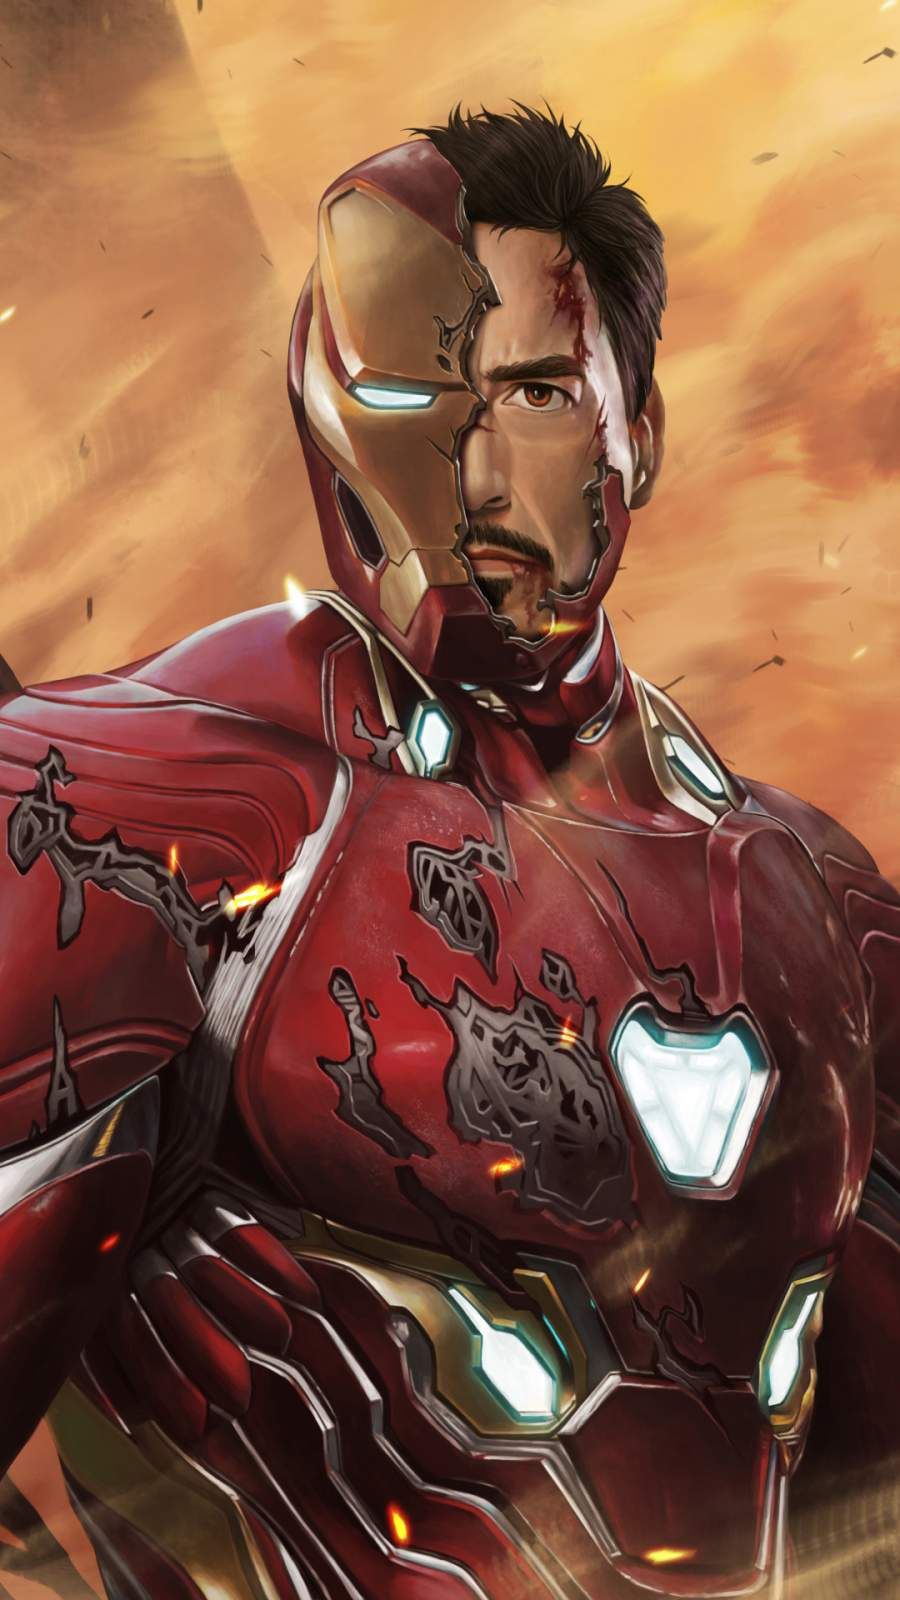 Iron Man Damage Suit iPhone Wallpaper. Iron man, Iron man picture, iPhone wallpaper